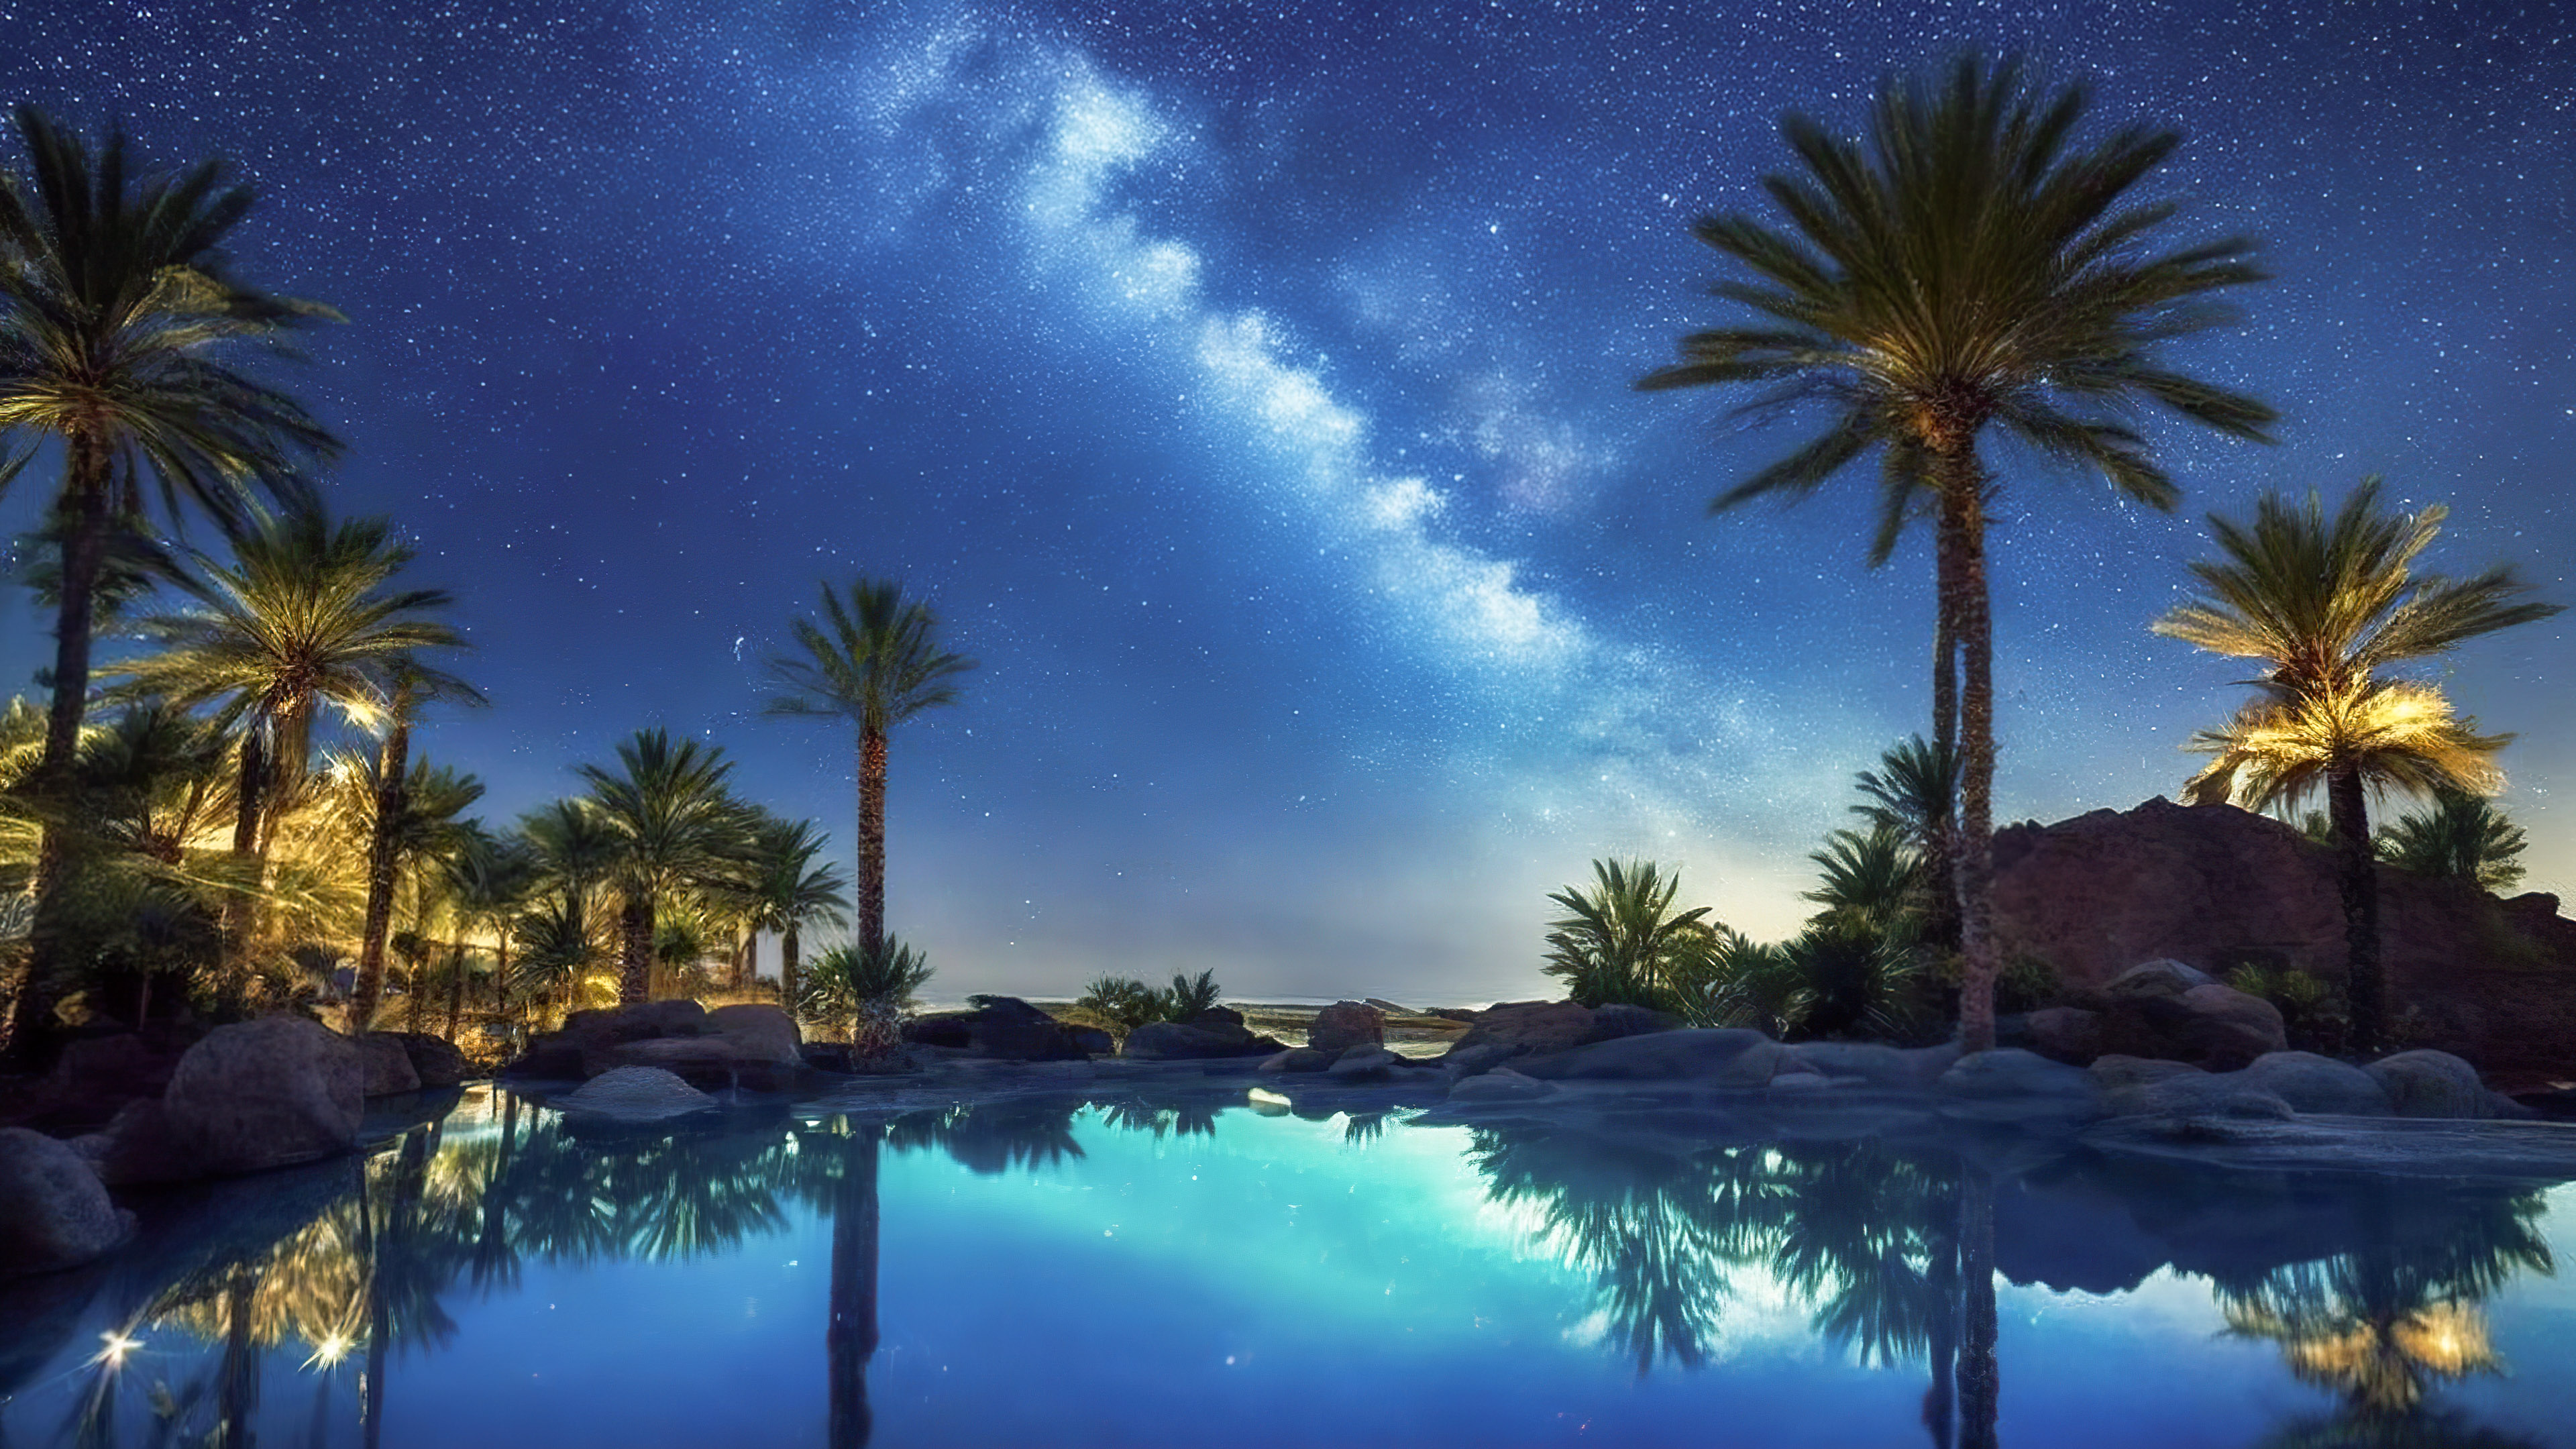 Ornez votre appareil avec un fond d'écran de ciel du soir, capturant une oasis désertique sous la Voie lactée, où des palmiers entourent une piscine sereine et étoilée.